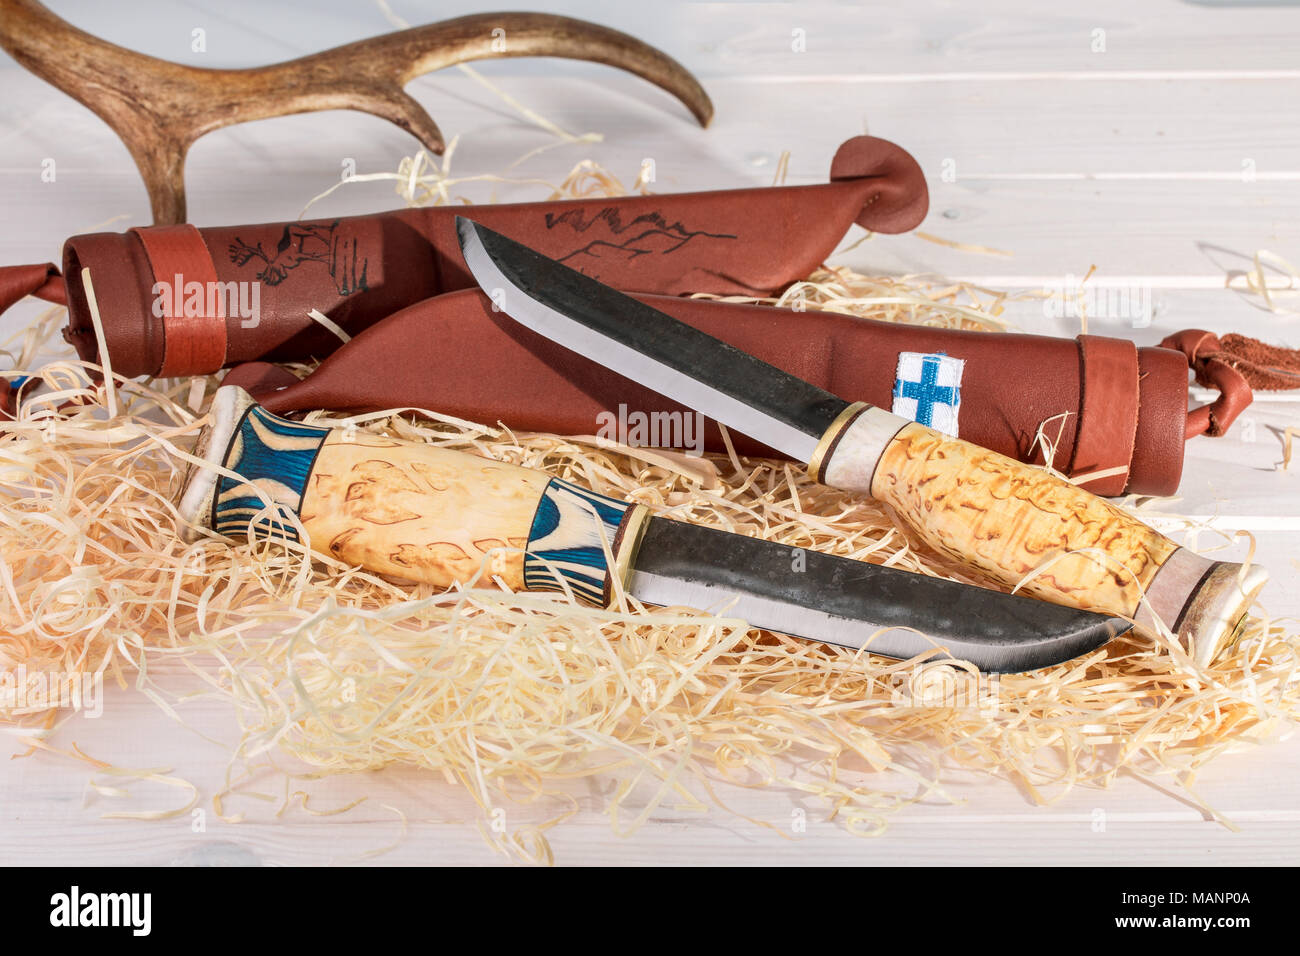 Ceinture traditionnel finlandais Puukko (couteaux) avec pointe courbée et fourreau en cuir fait main à partir de bois, de corne de renne et de l'acier, la Finlande Y 100 Banque D'Images